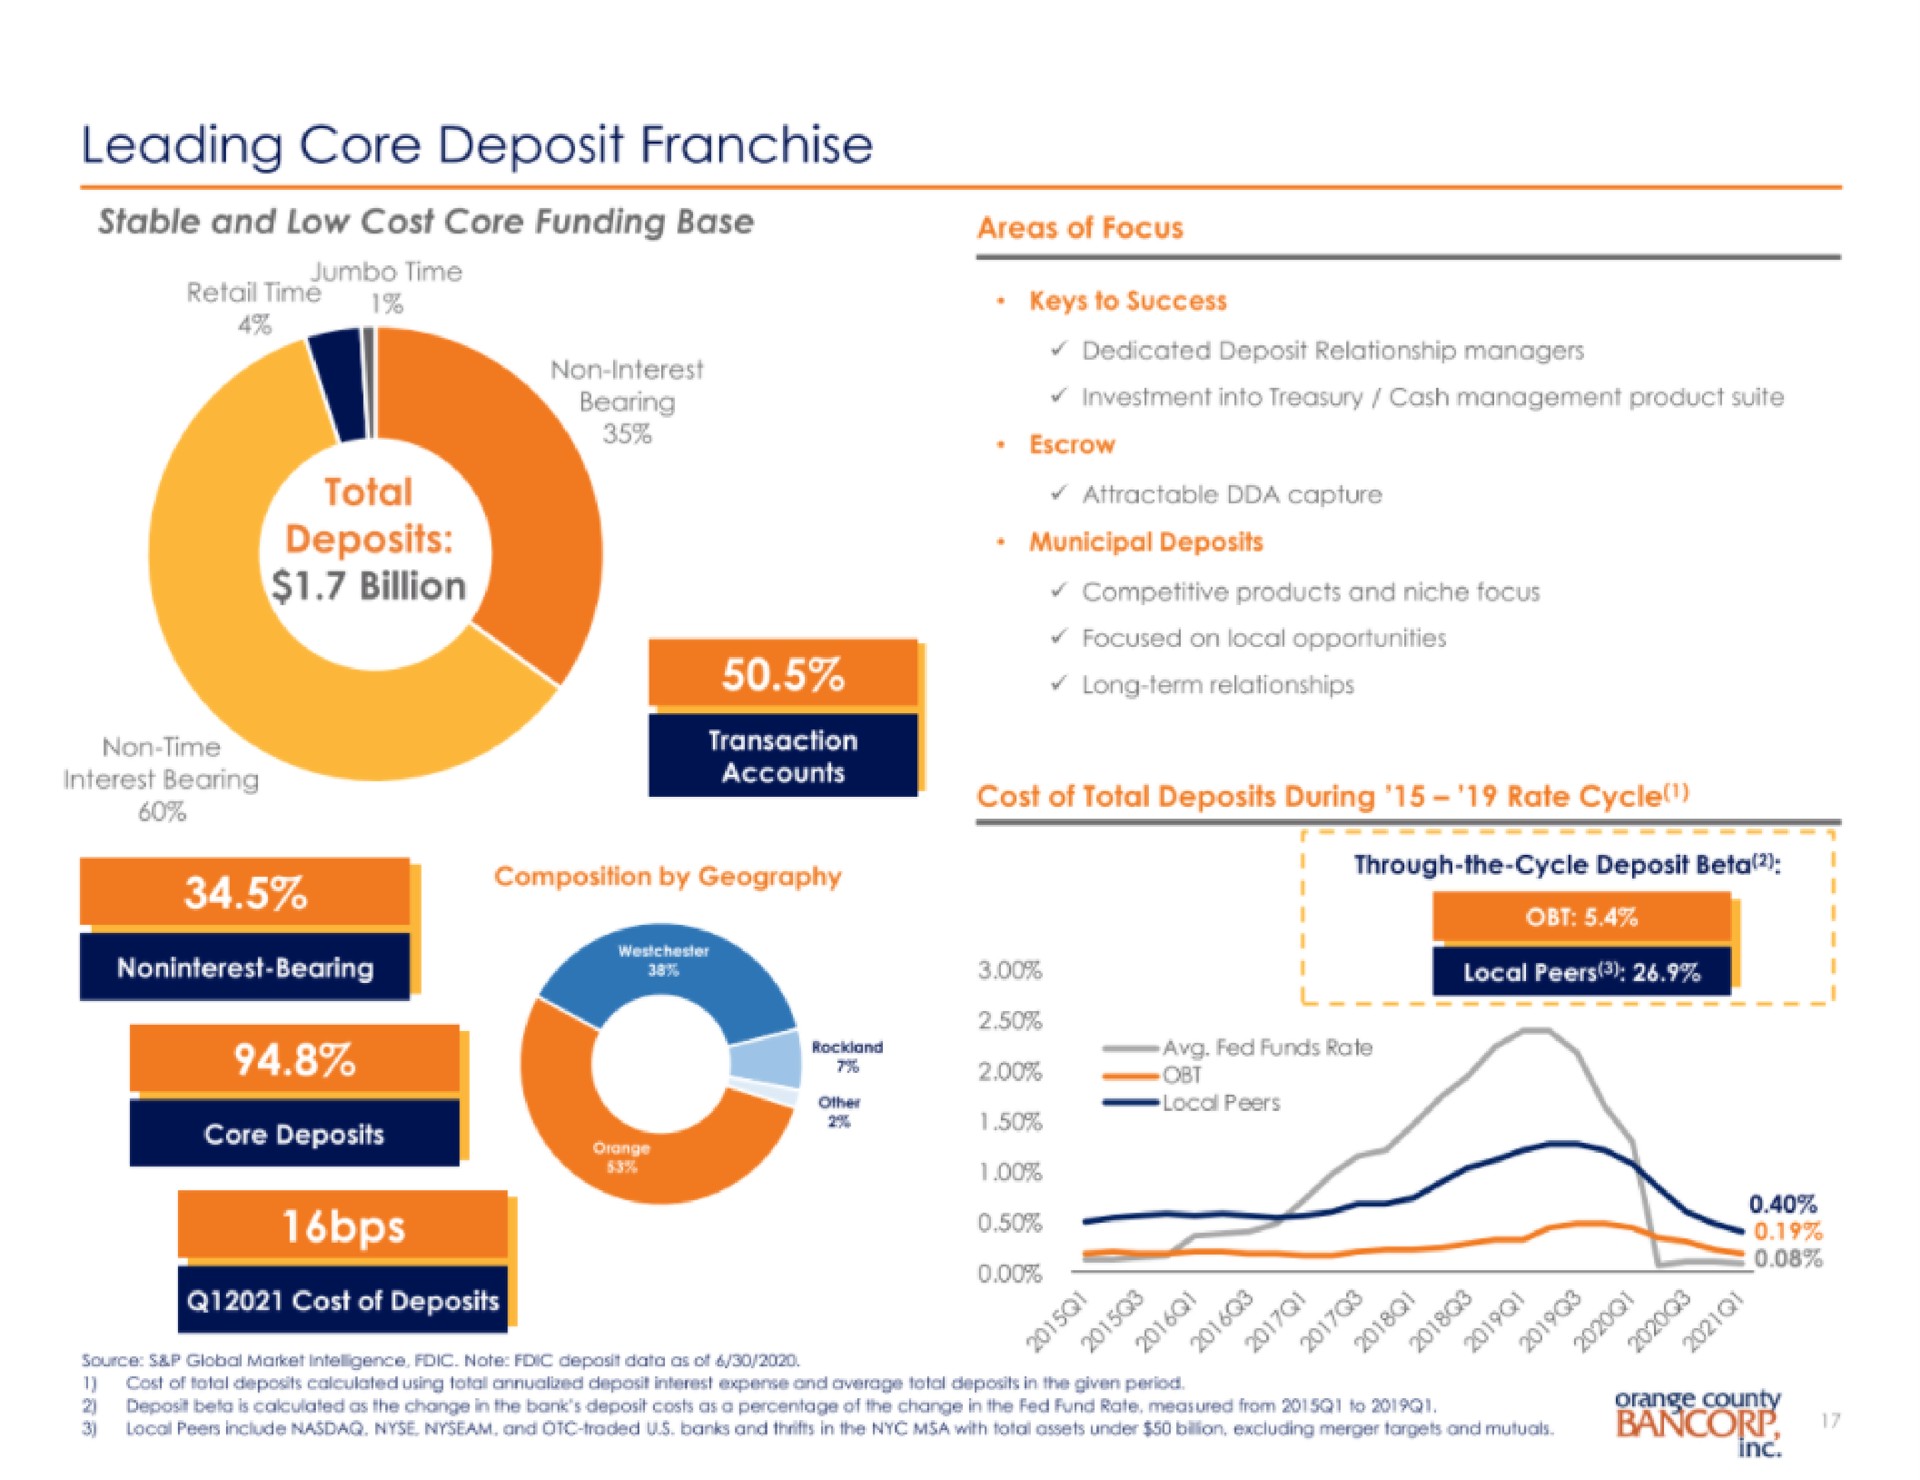 leading core deposit franchise | Orange County Bancorp